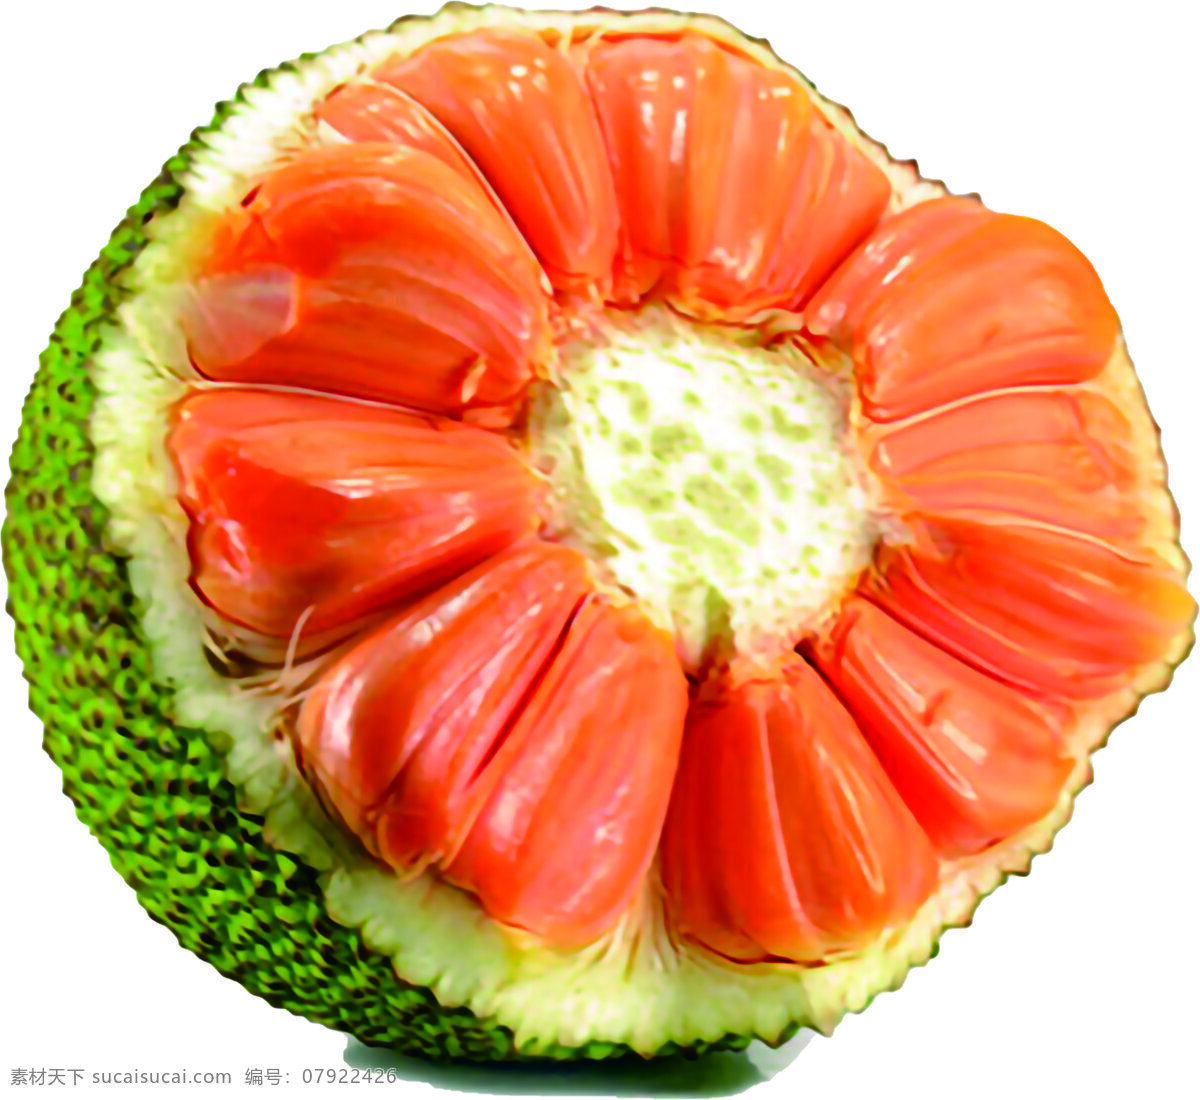 泰国 红 肉 菠萝蜜 红肉菠萝蜜 高清图片 菠萝蜜图片 菠萝蜜素材